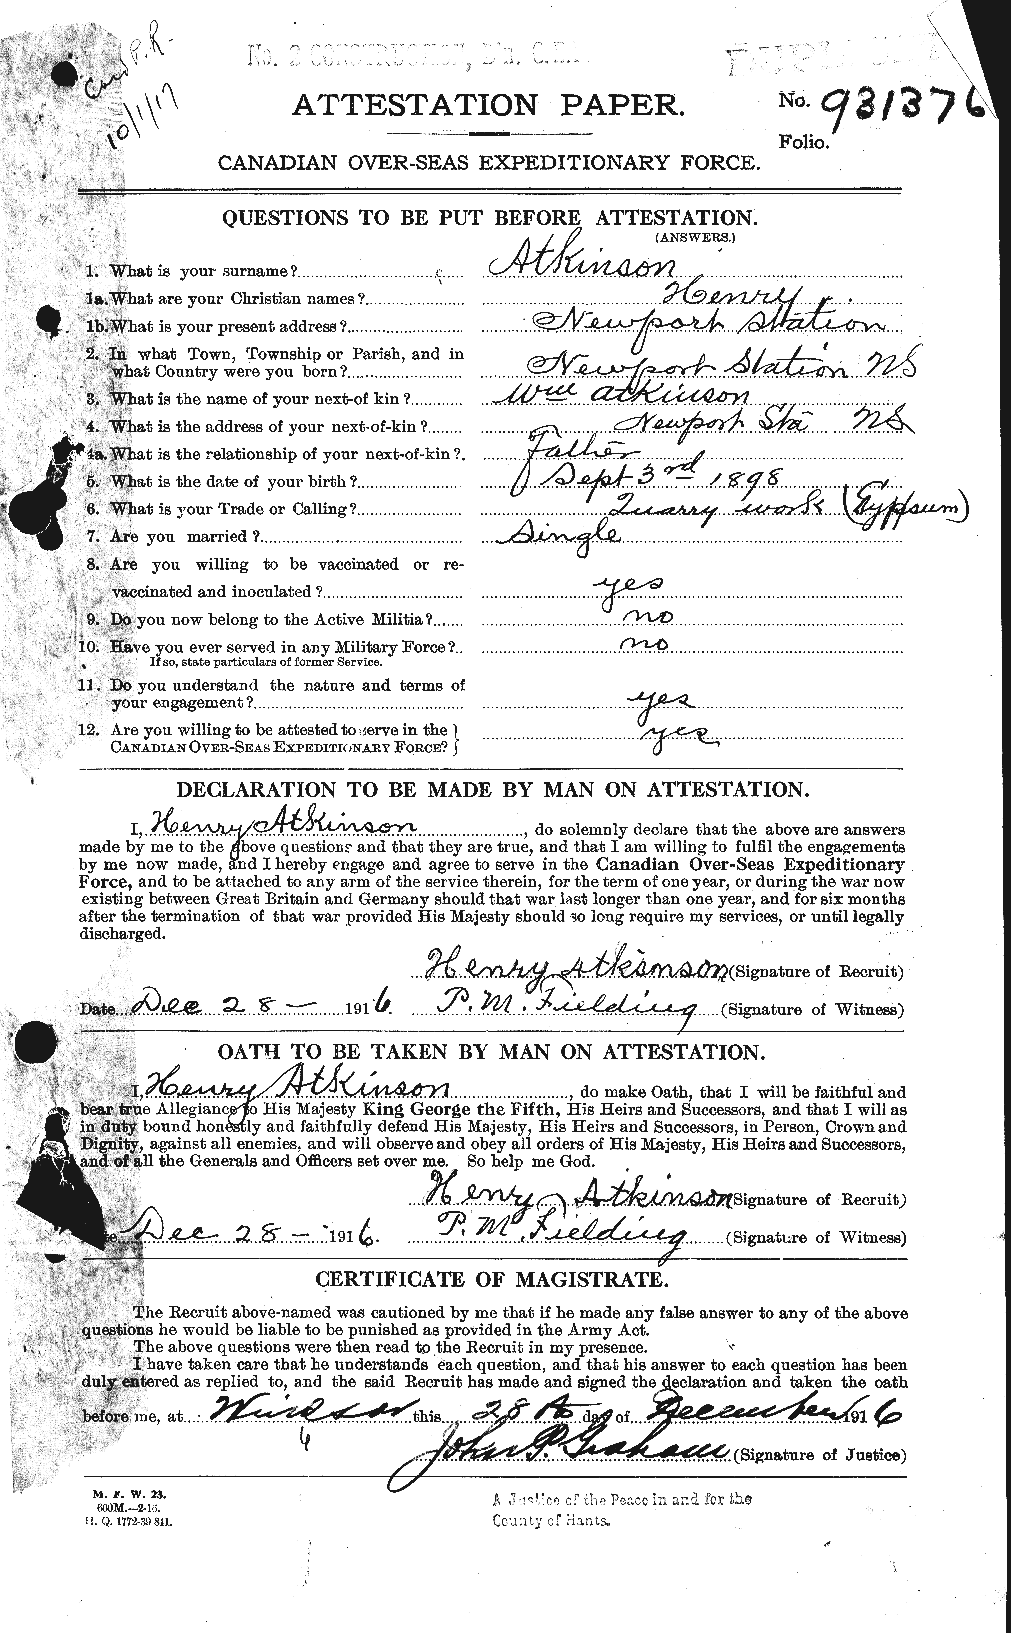 Dossiers du Personnel de la Première Guerre mondiale - CEC 217373a